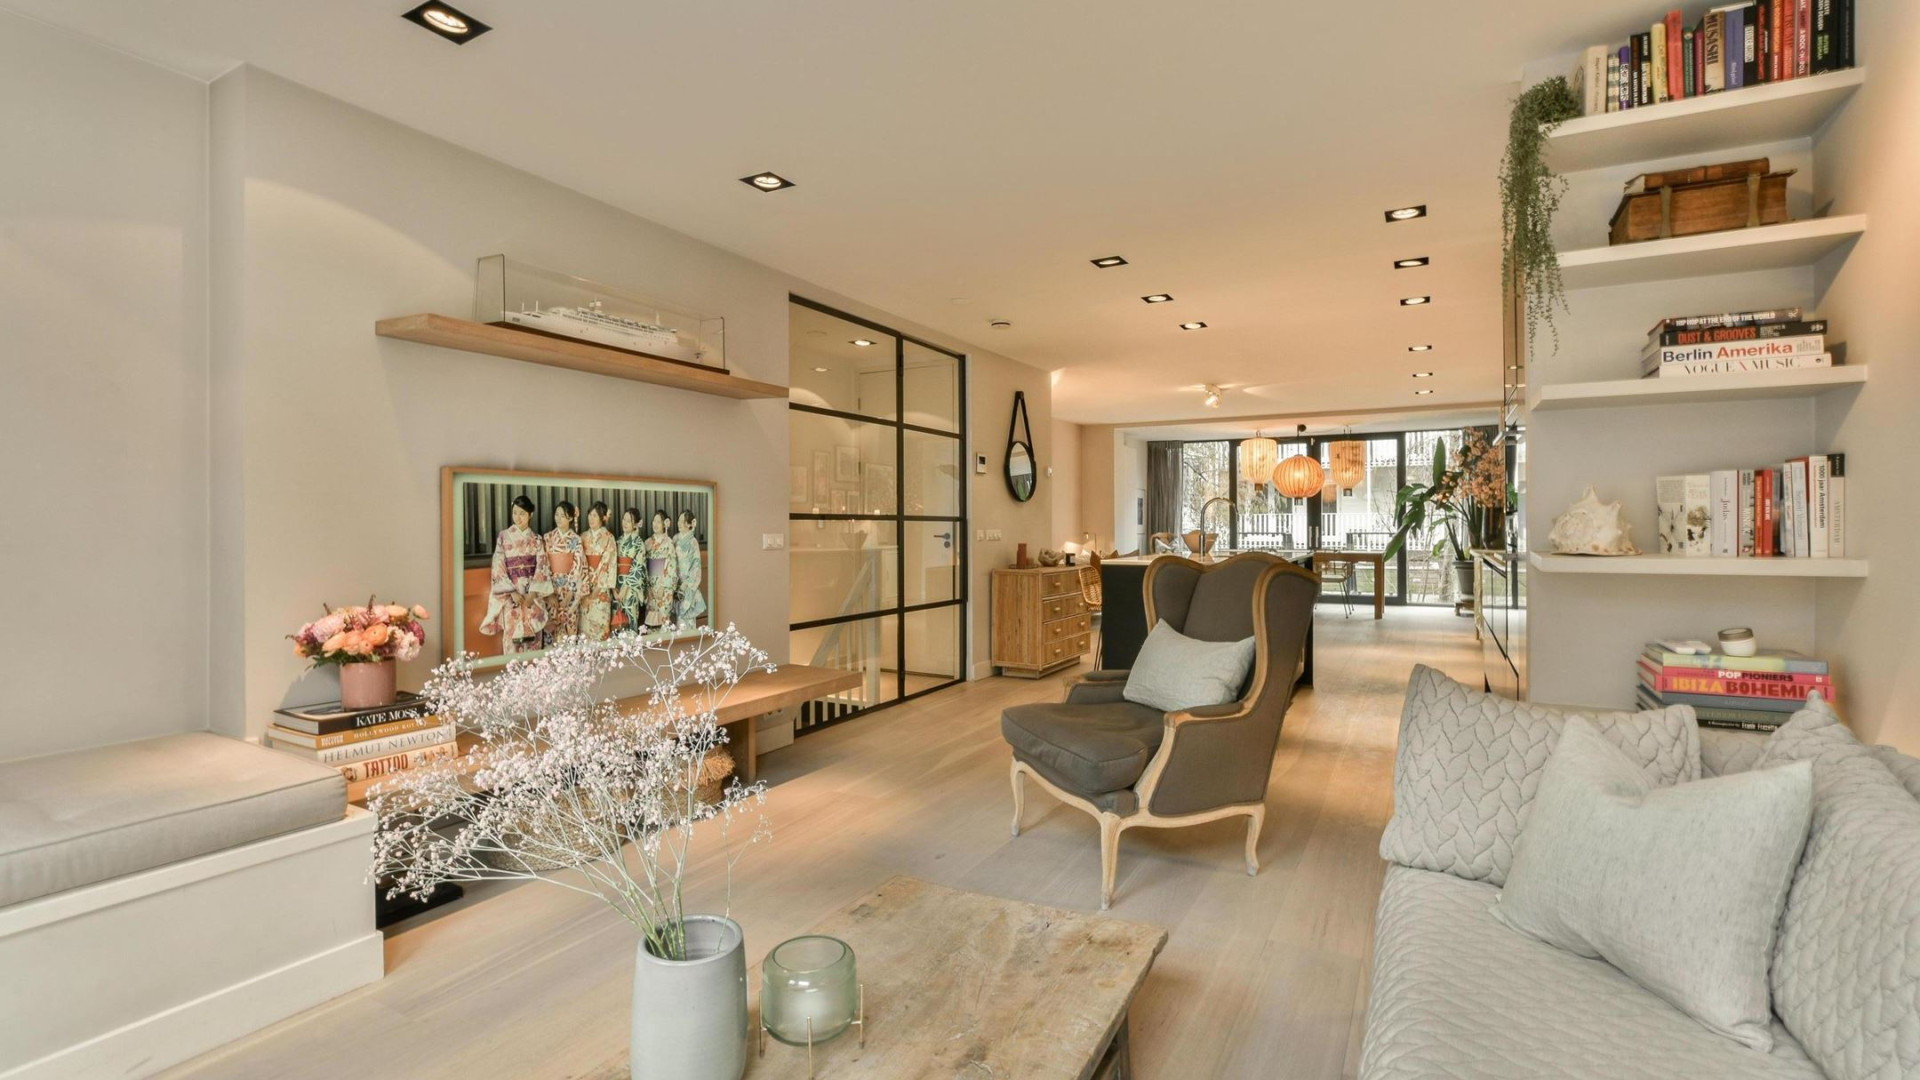 Candy Dulfer zet haar prachtige luxe dubbele benedenhuis in Amsterdam te koop. Zie alle binnenfoto's